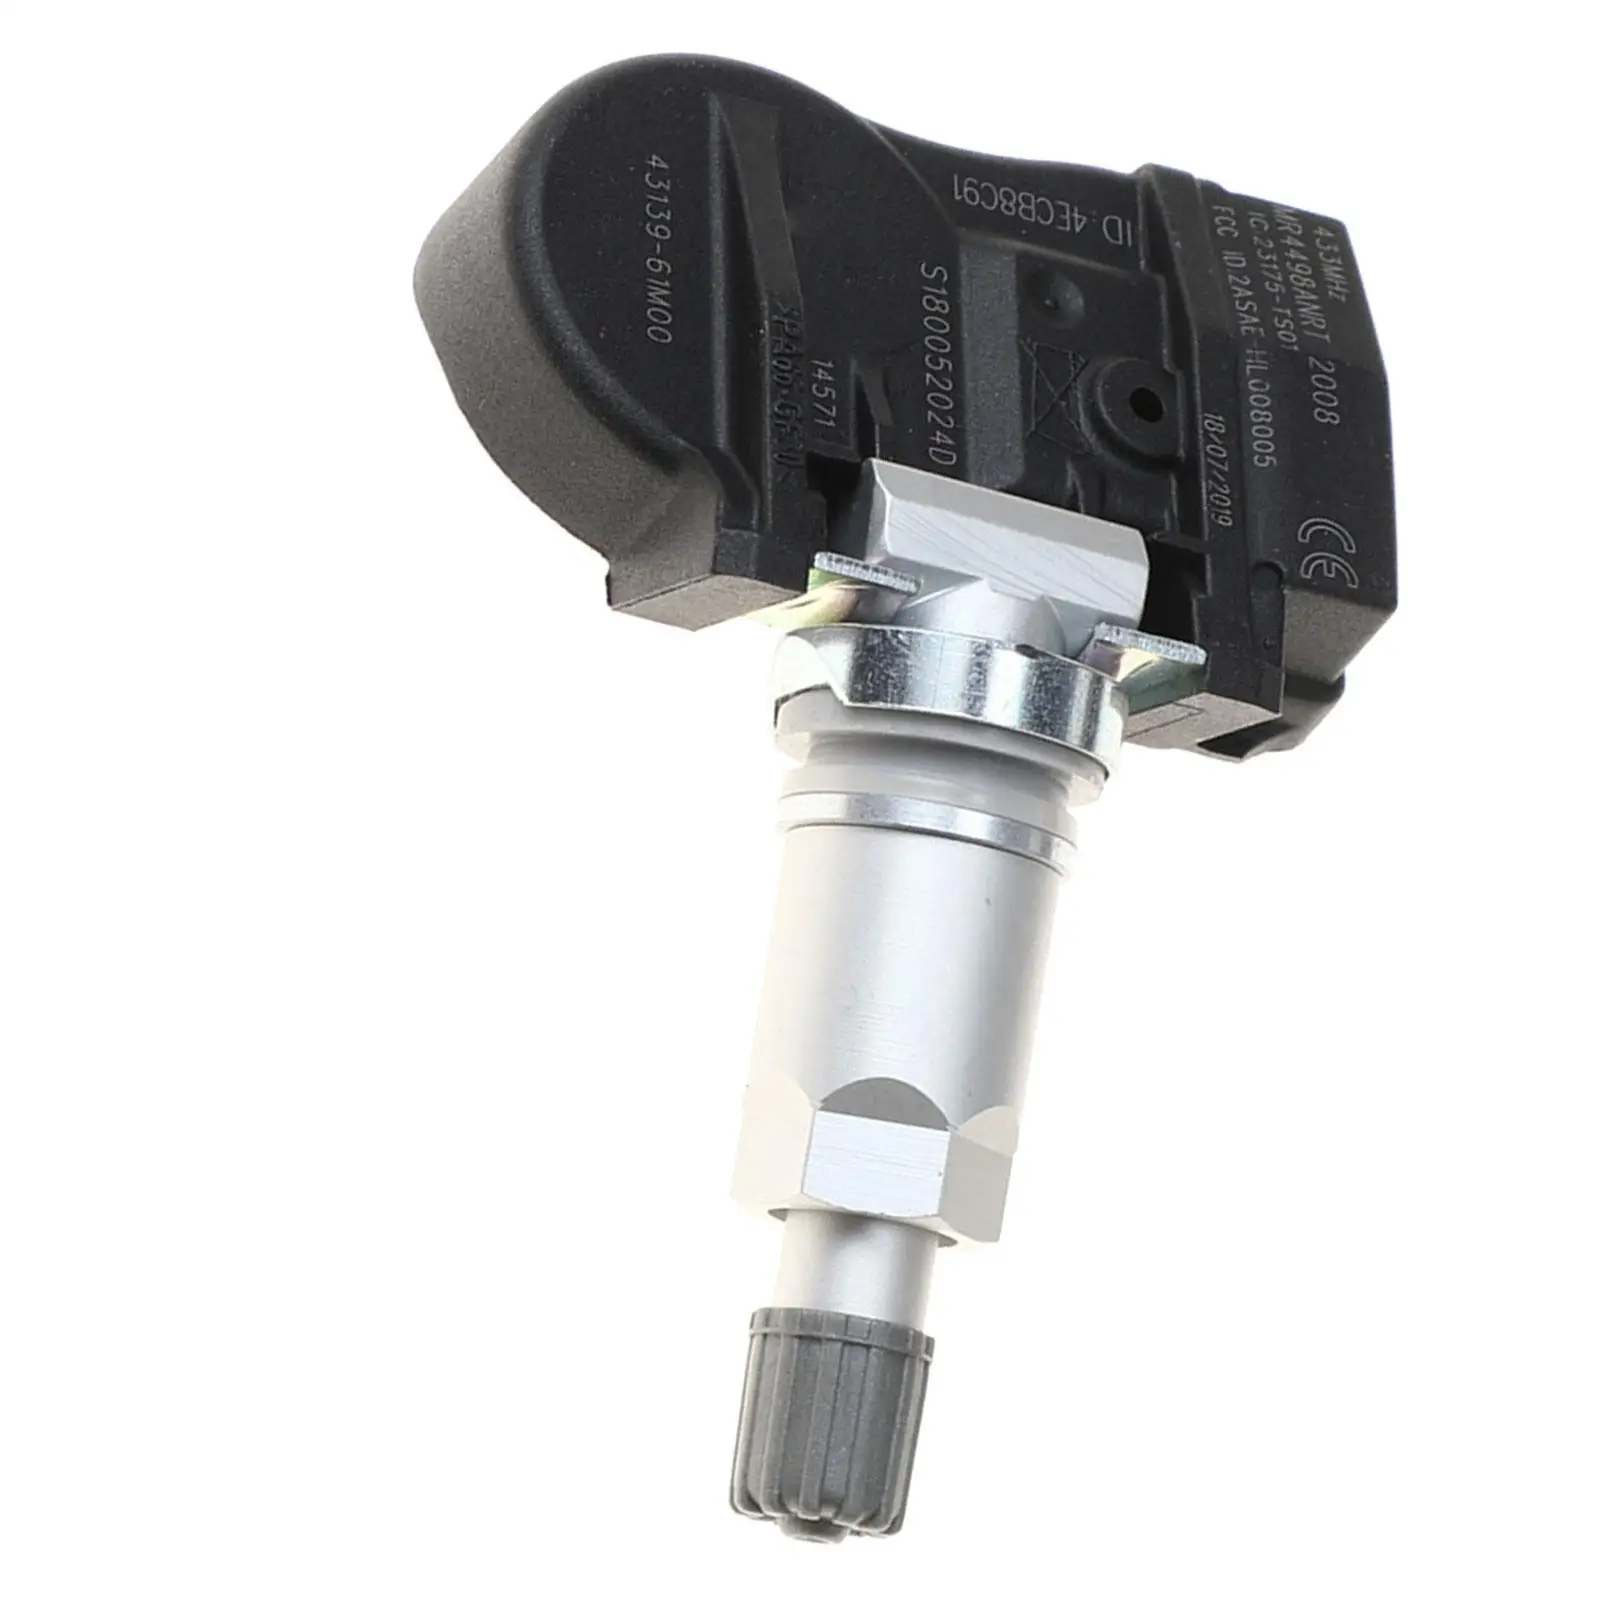 Tire Pressure Monitor Sensor Spare Parts for Suzuki Jimmy Sport Vitara SX4 S-cross Car Accessories Fine Surface Processing